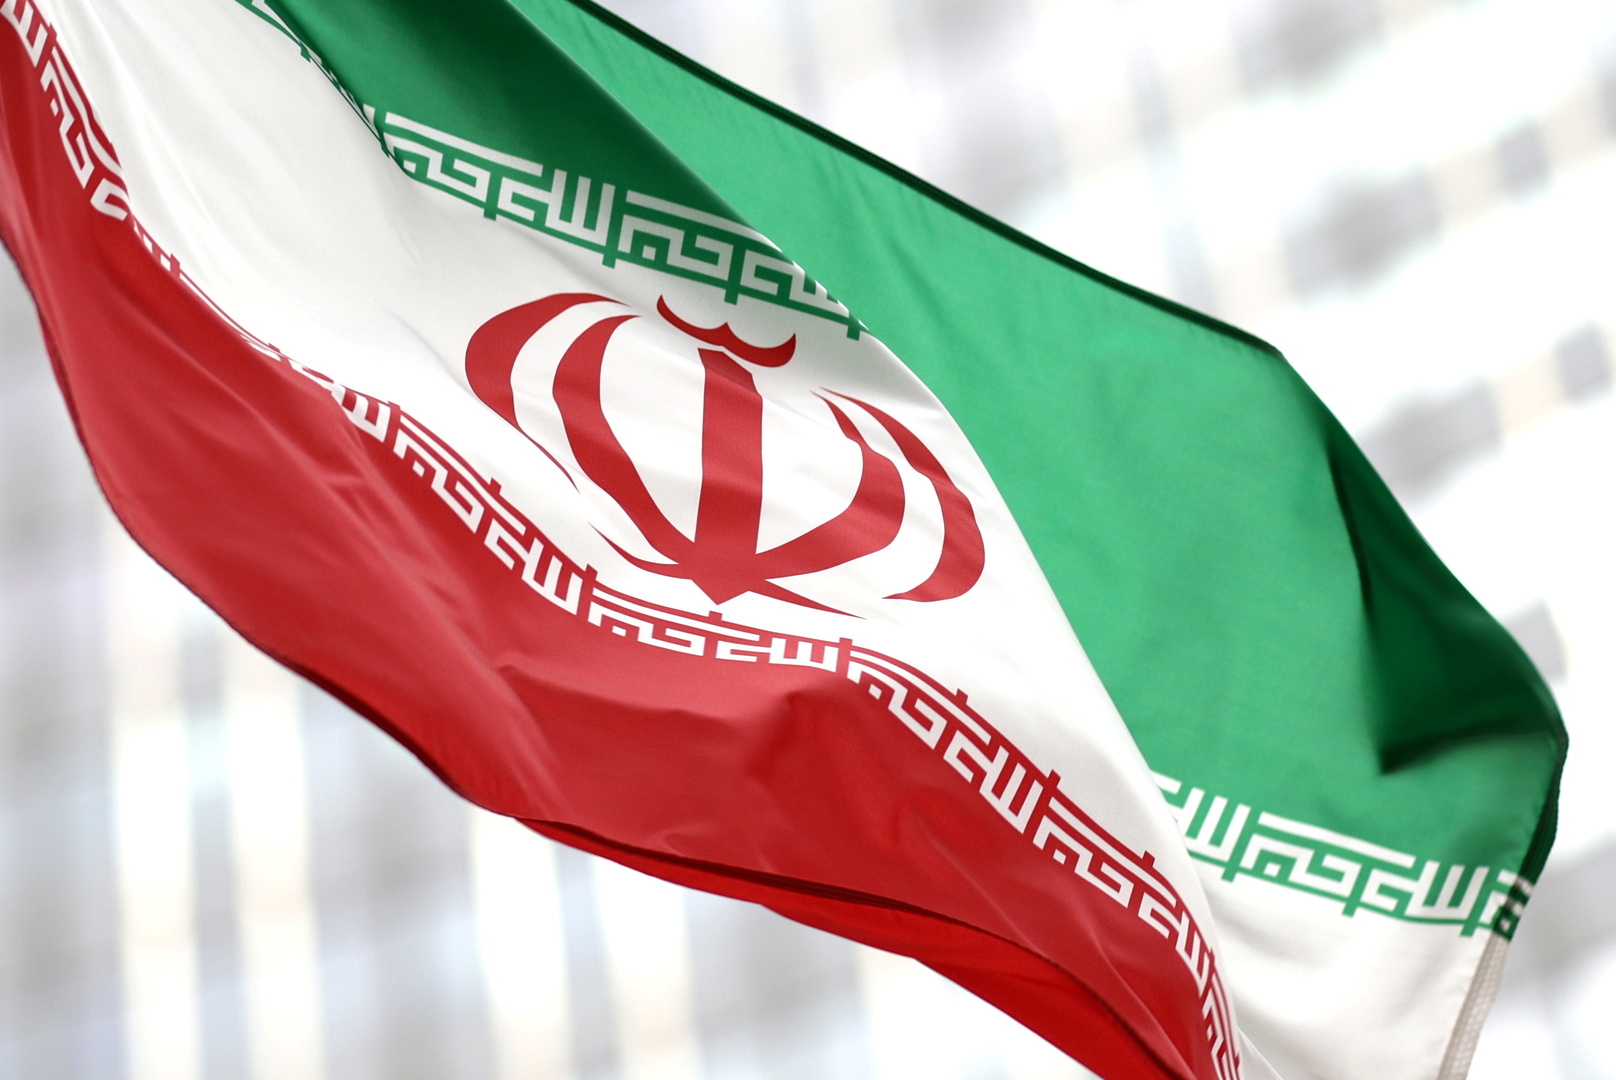 إيران: إنهاء التوتر وتحقيق الشراكة الاستراتيجية مع دول الجوار من أولوياتنا